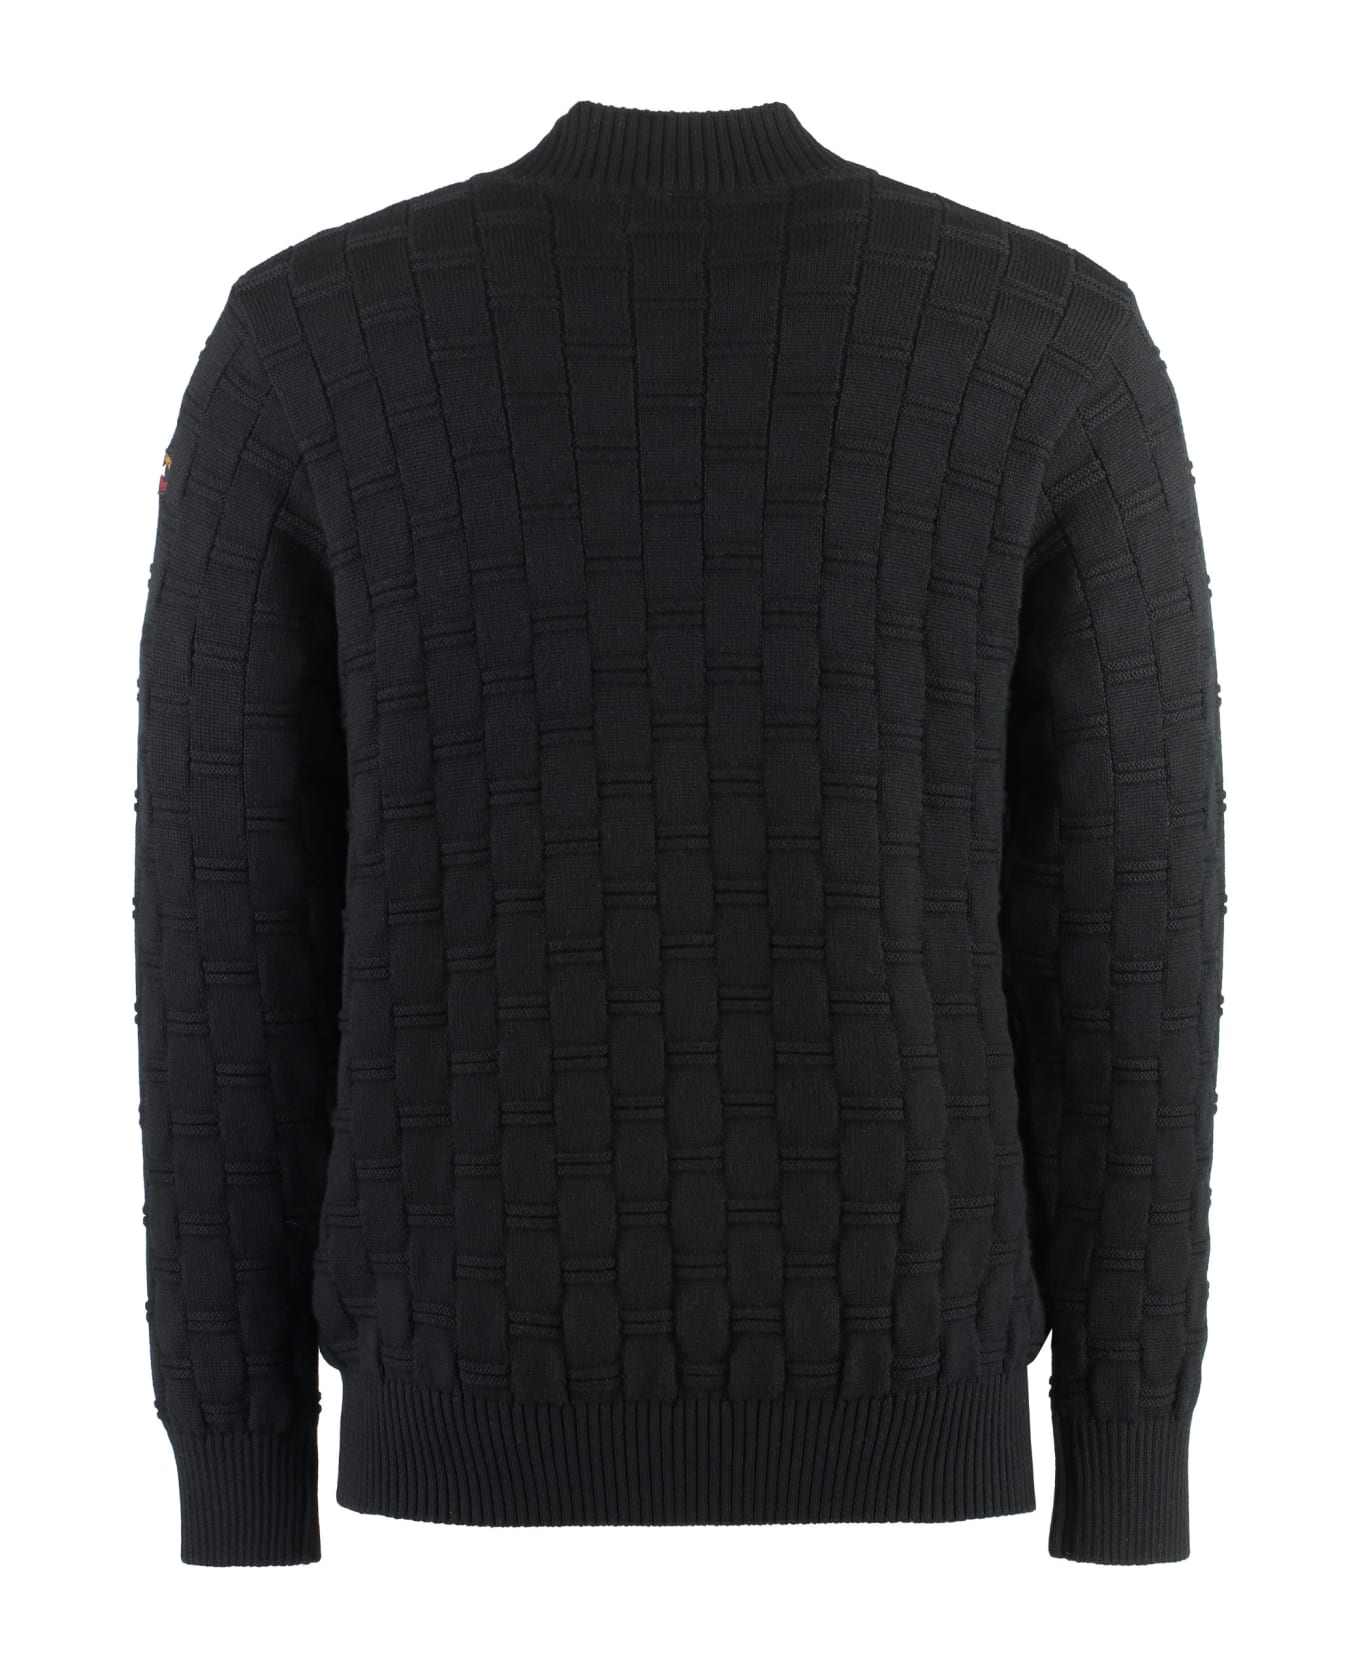 Paul&Shark Virgin Wool Crew-neck Sweater - black ニットウェア